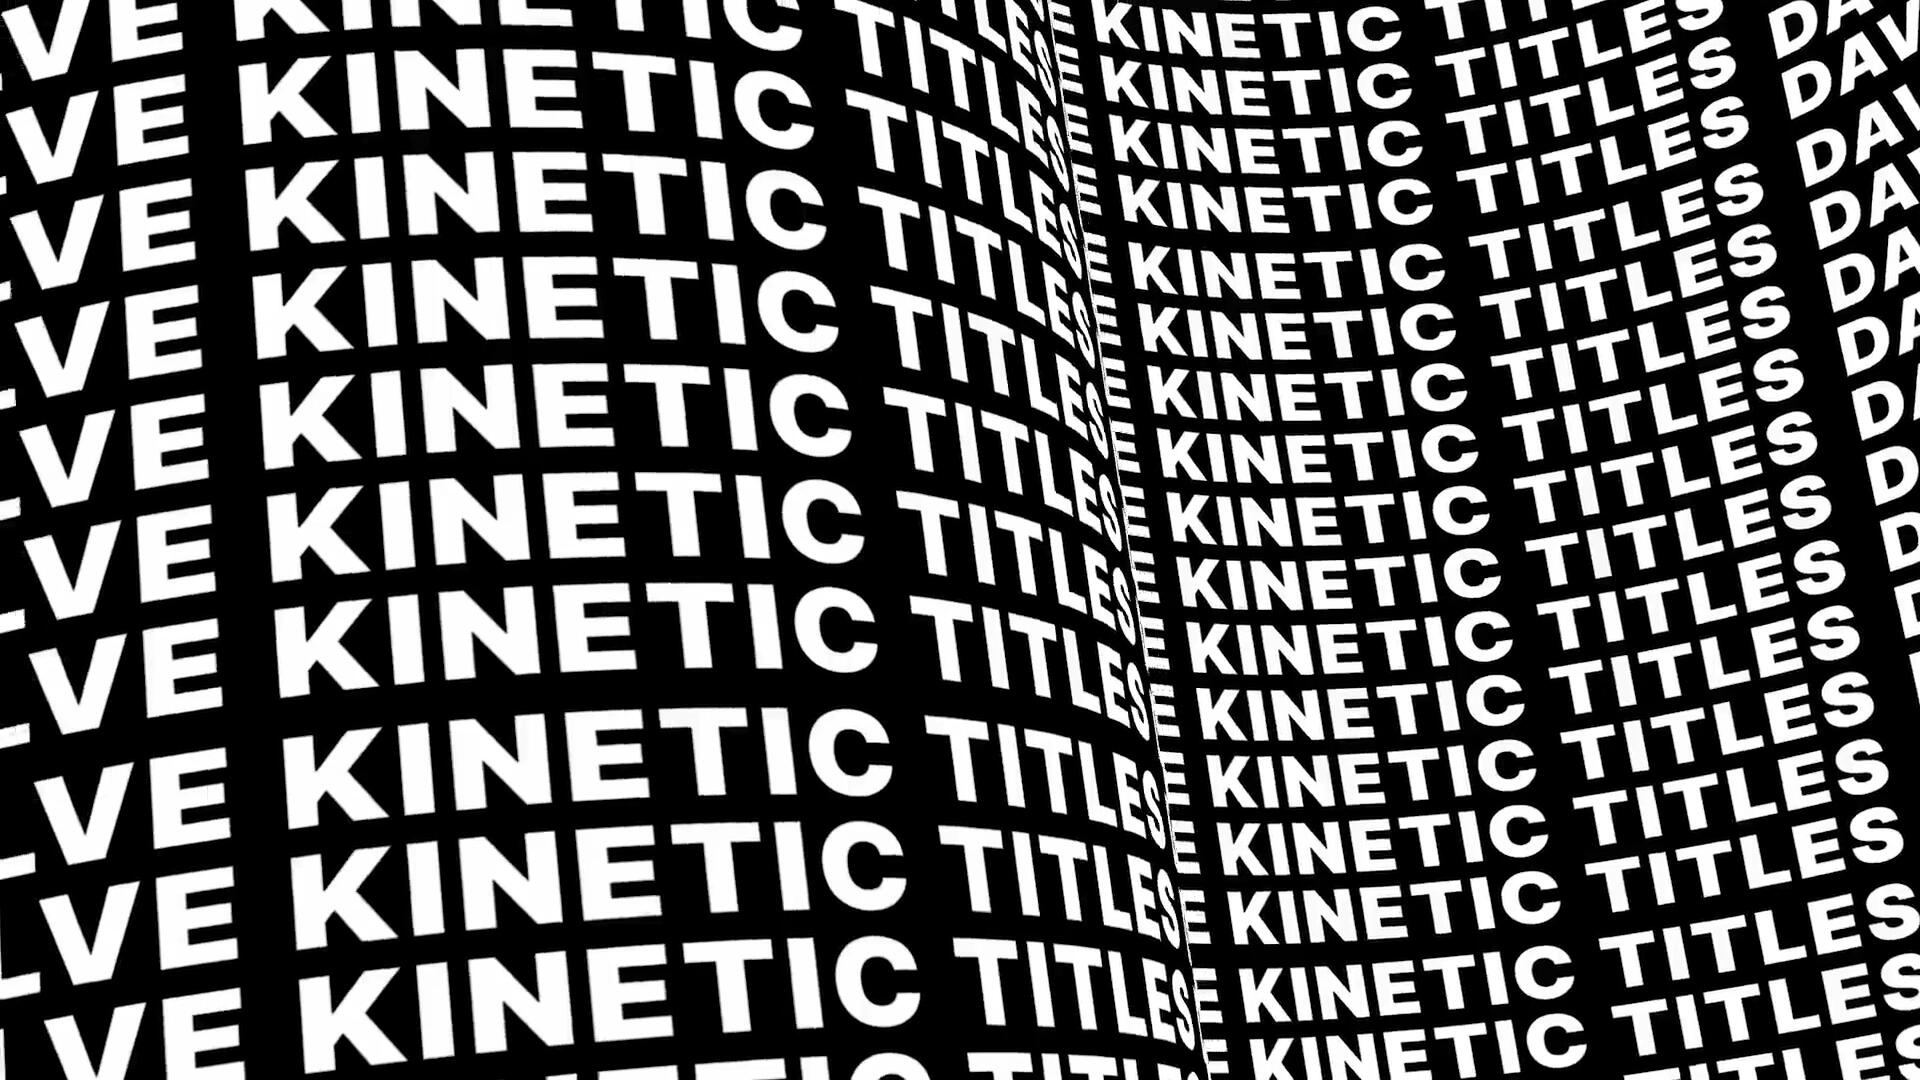 达芬奇预设：10个野蛮动力学抽象海报错别字循环文本标题动画排版包 Kinetic Titles for Davinci Resolve . 第6张